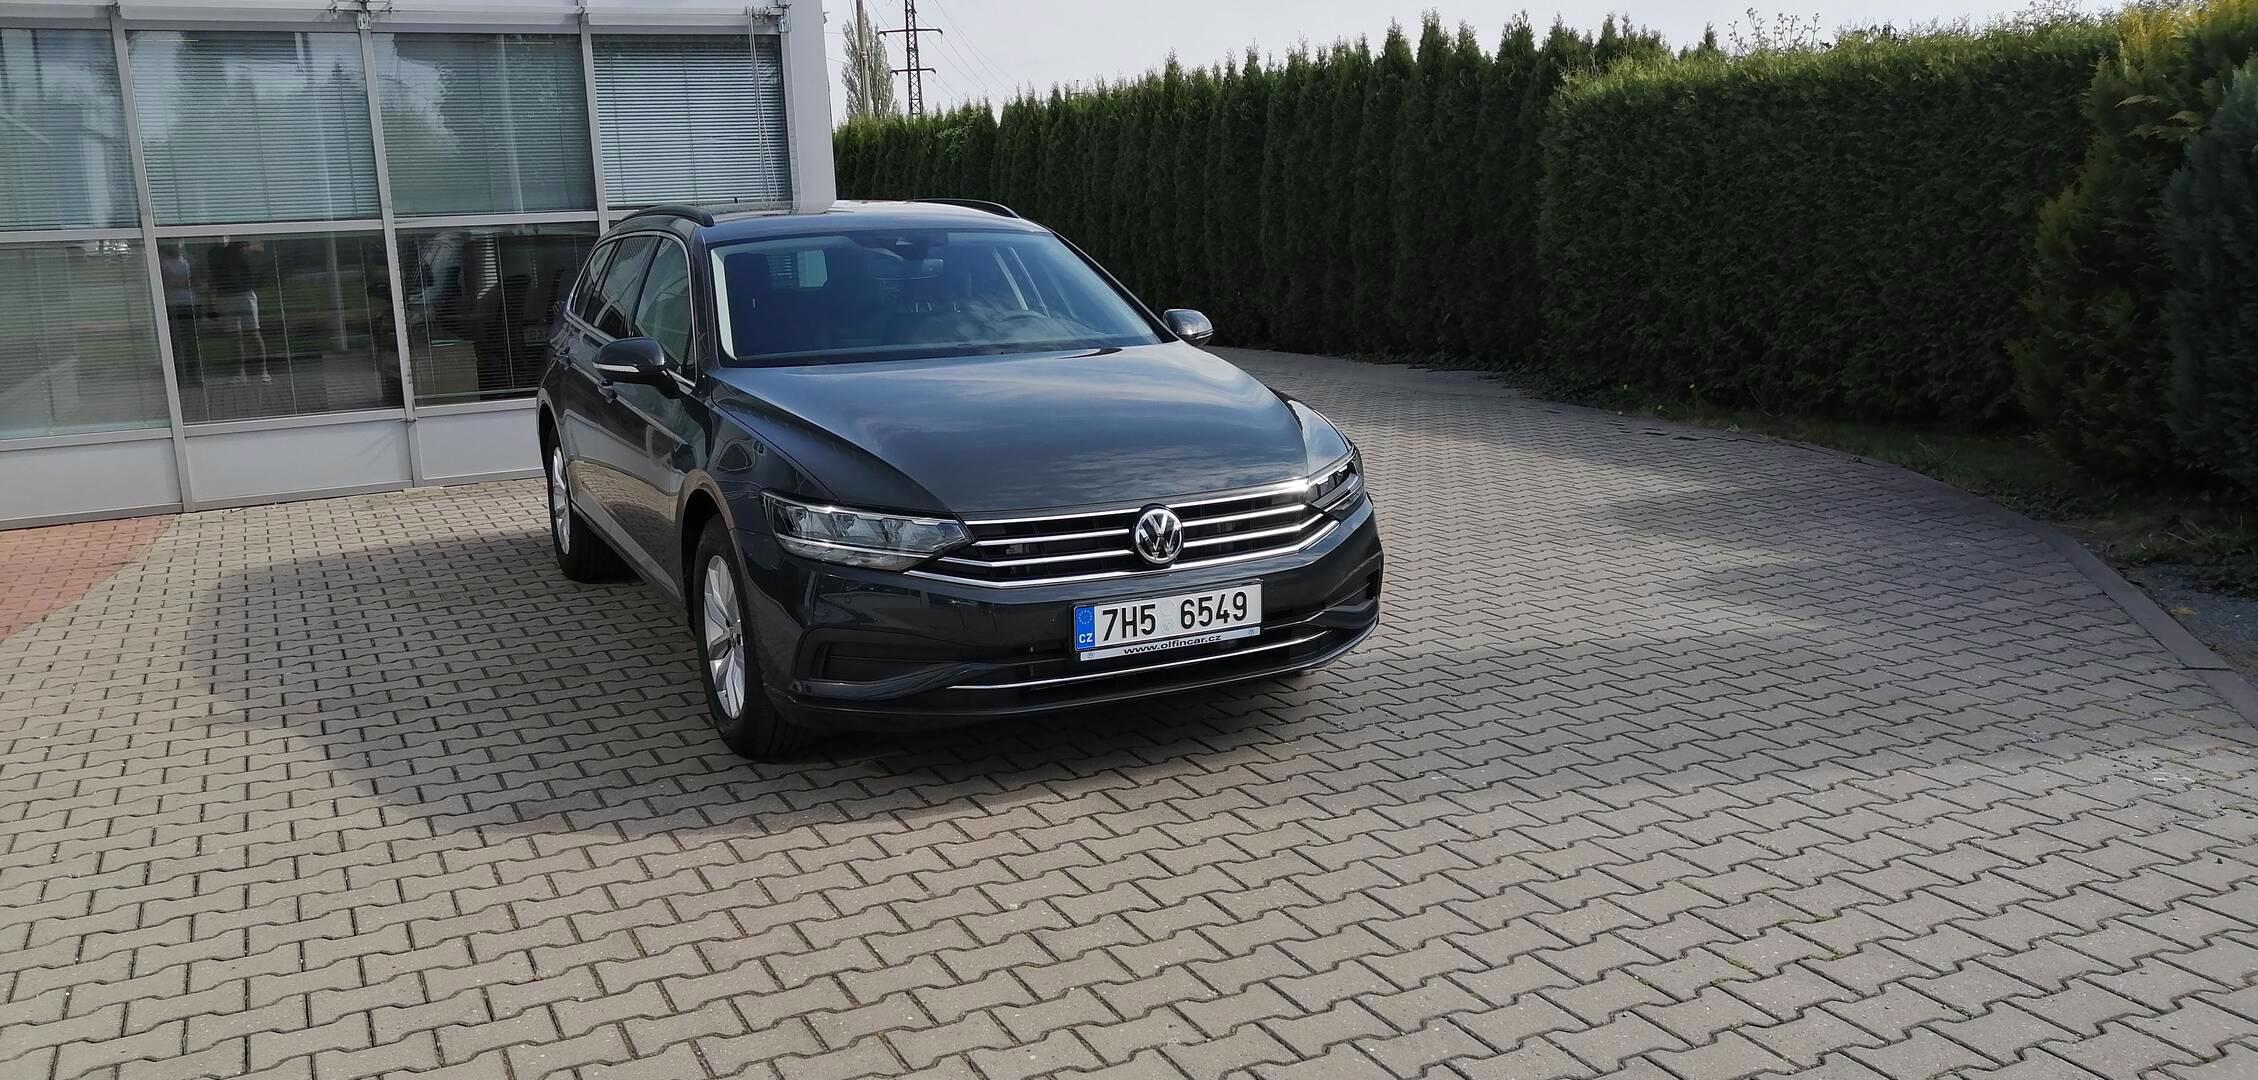 Volkswagen Passat Combi - r.v. 2020, 9900 km, záruka - foto 1